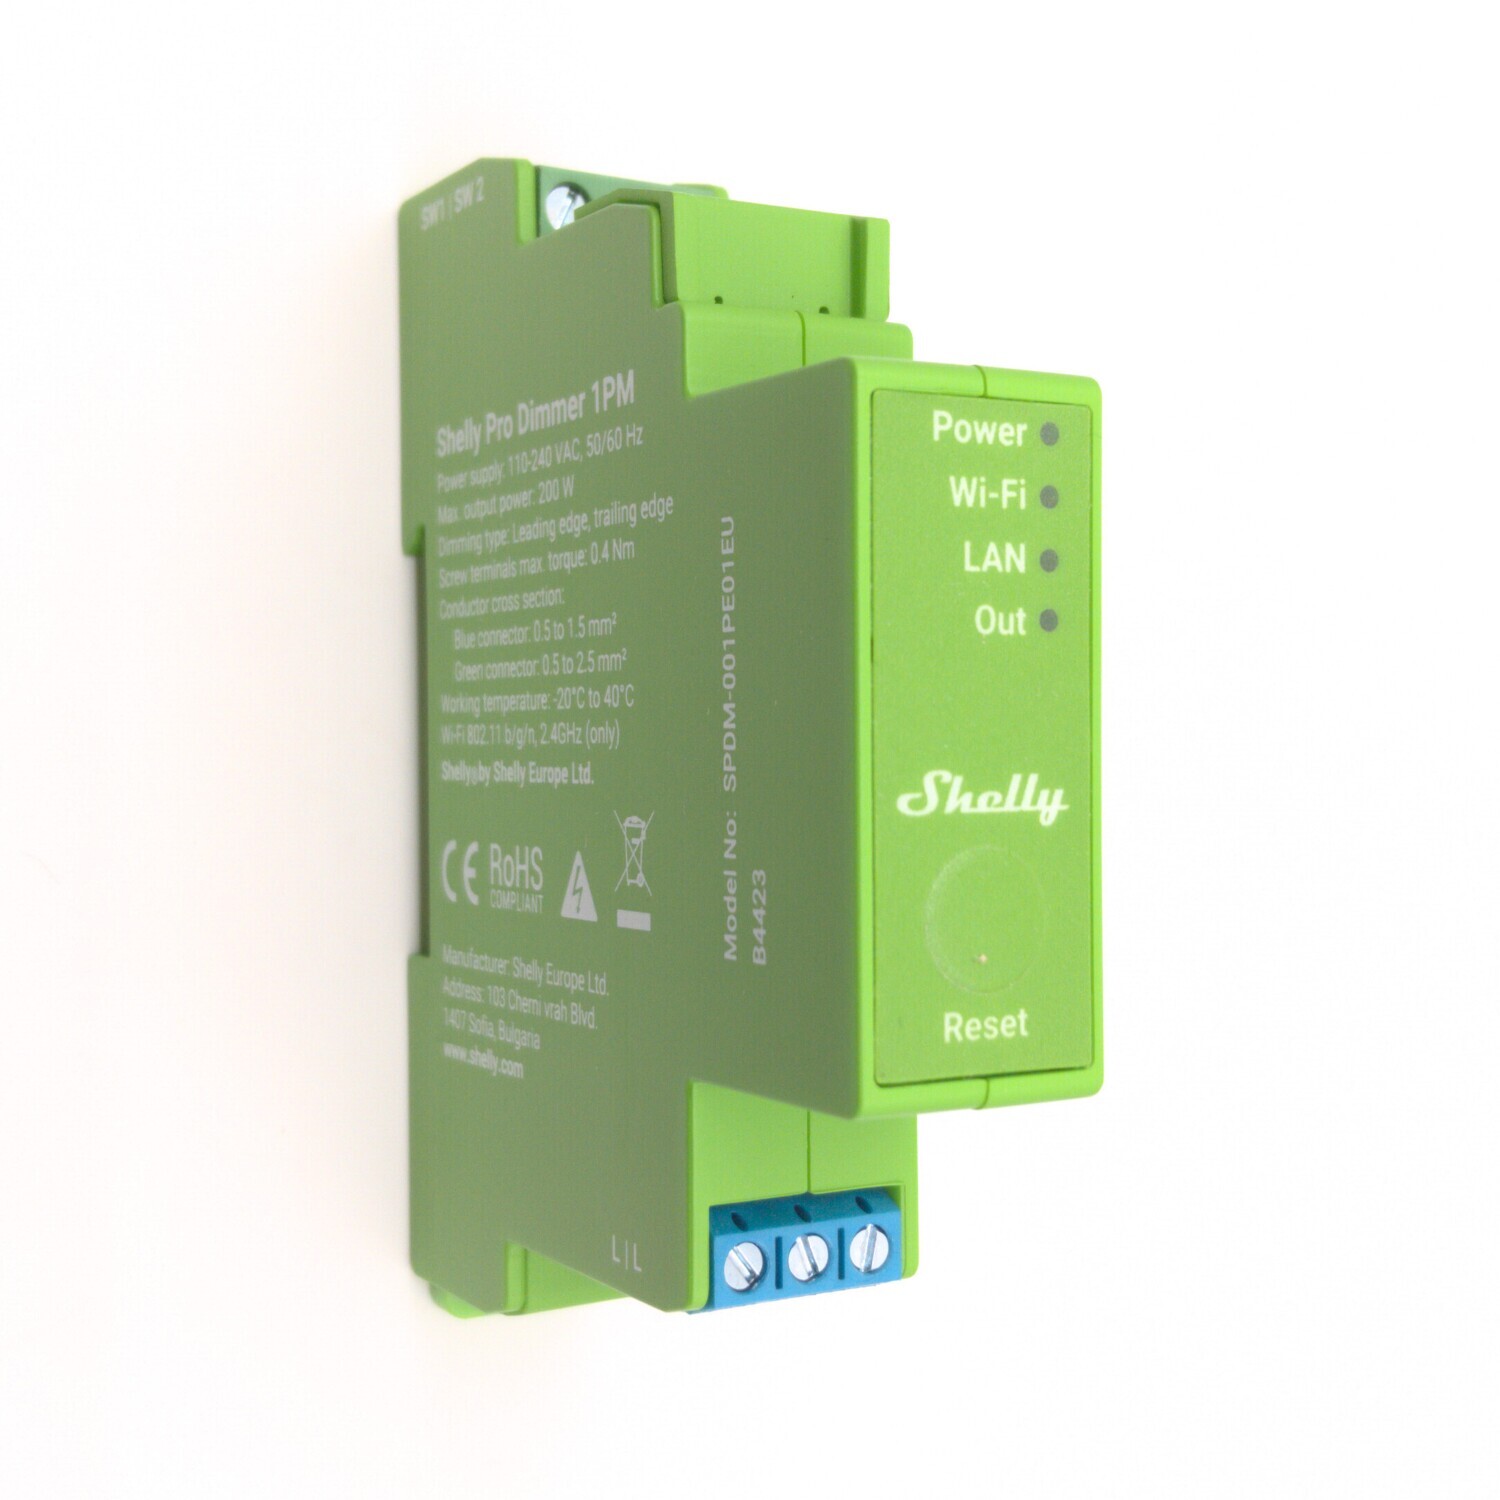 Shelly Pro Dimmer 1PM - 200W ohjelmoitava ja energiaa mittaava WiFi / Ethernet-himmennin DIN-kiskoon